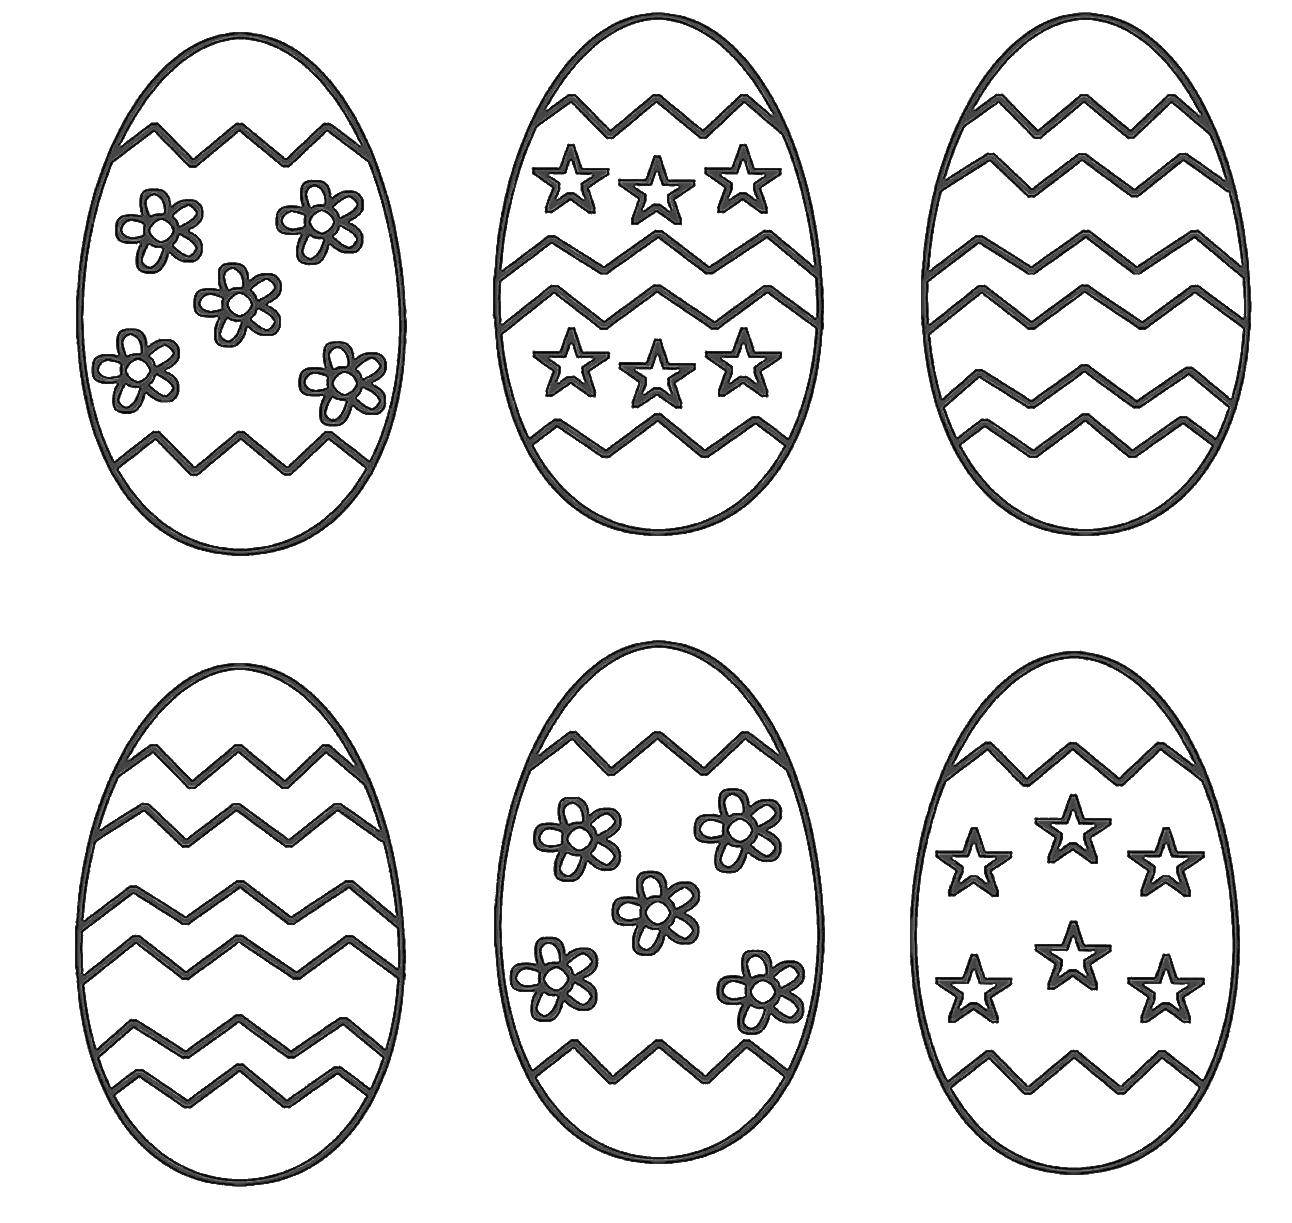 Название: Раскраска Красивые узоры на яичках. Категория: Узоры для раскрашивания яиц. Теги: Пасха, яйца, узоры.